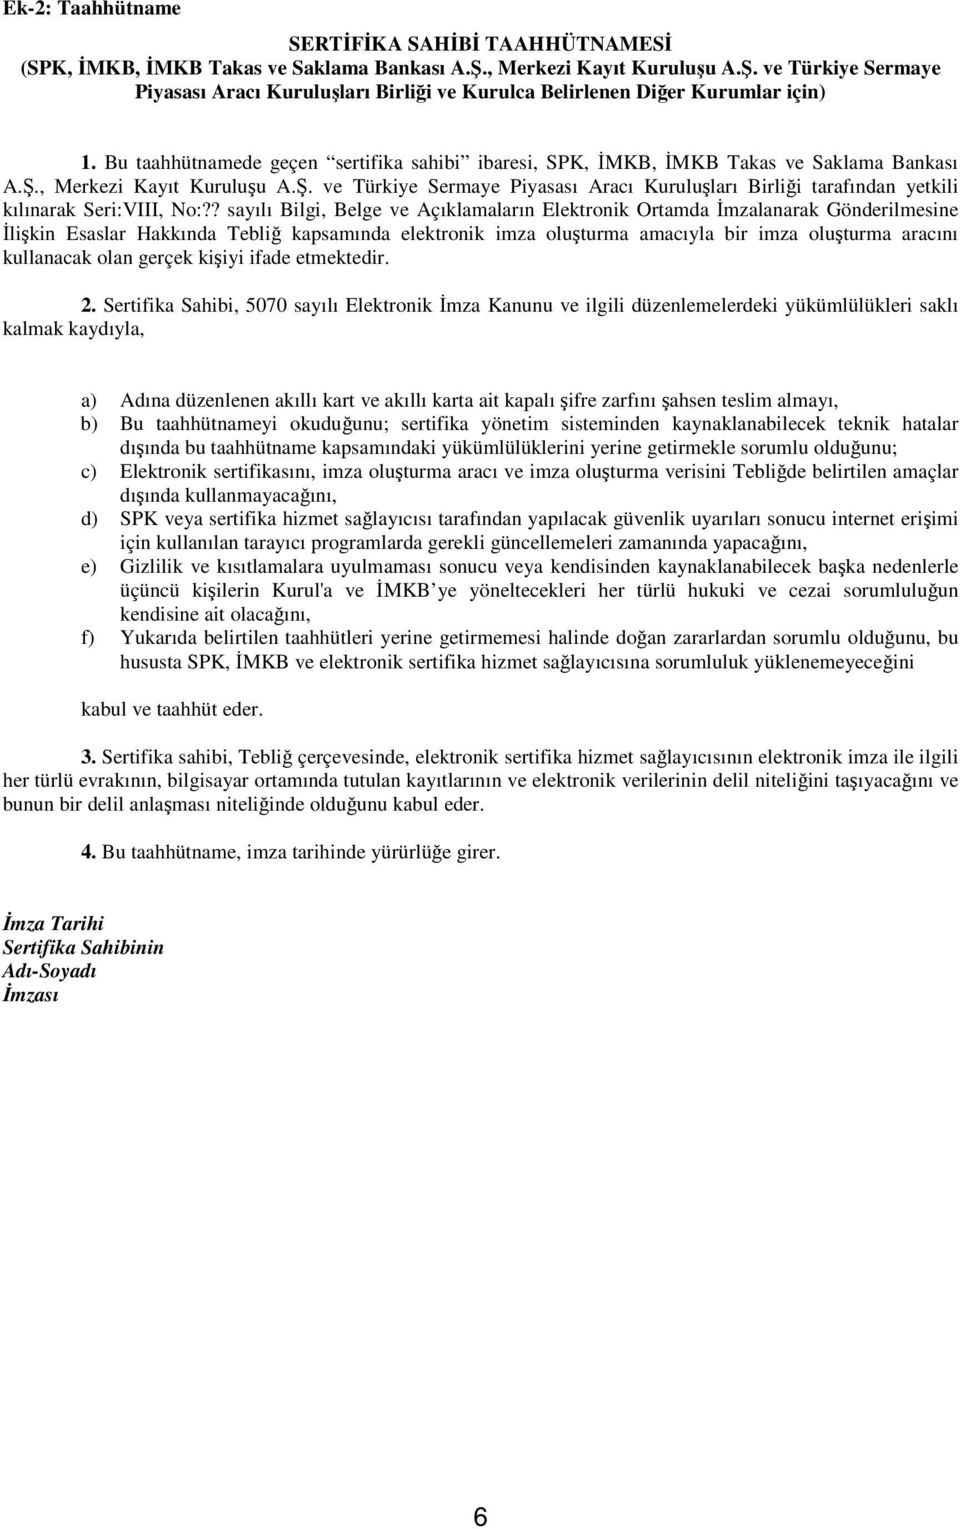 ., Merkezi Kayıt Kuruluu A.. ve Türkiye Sermaye Piyasası Aracı Kuruluları Birlii tarafından yetkili kılınarak Seri:VIII, No:?